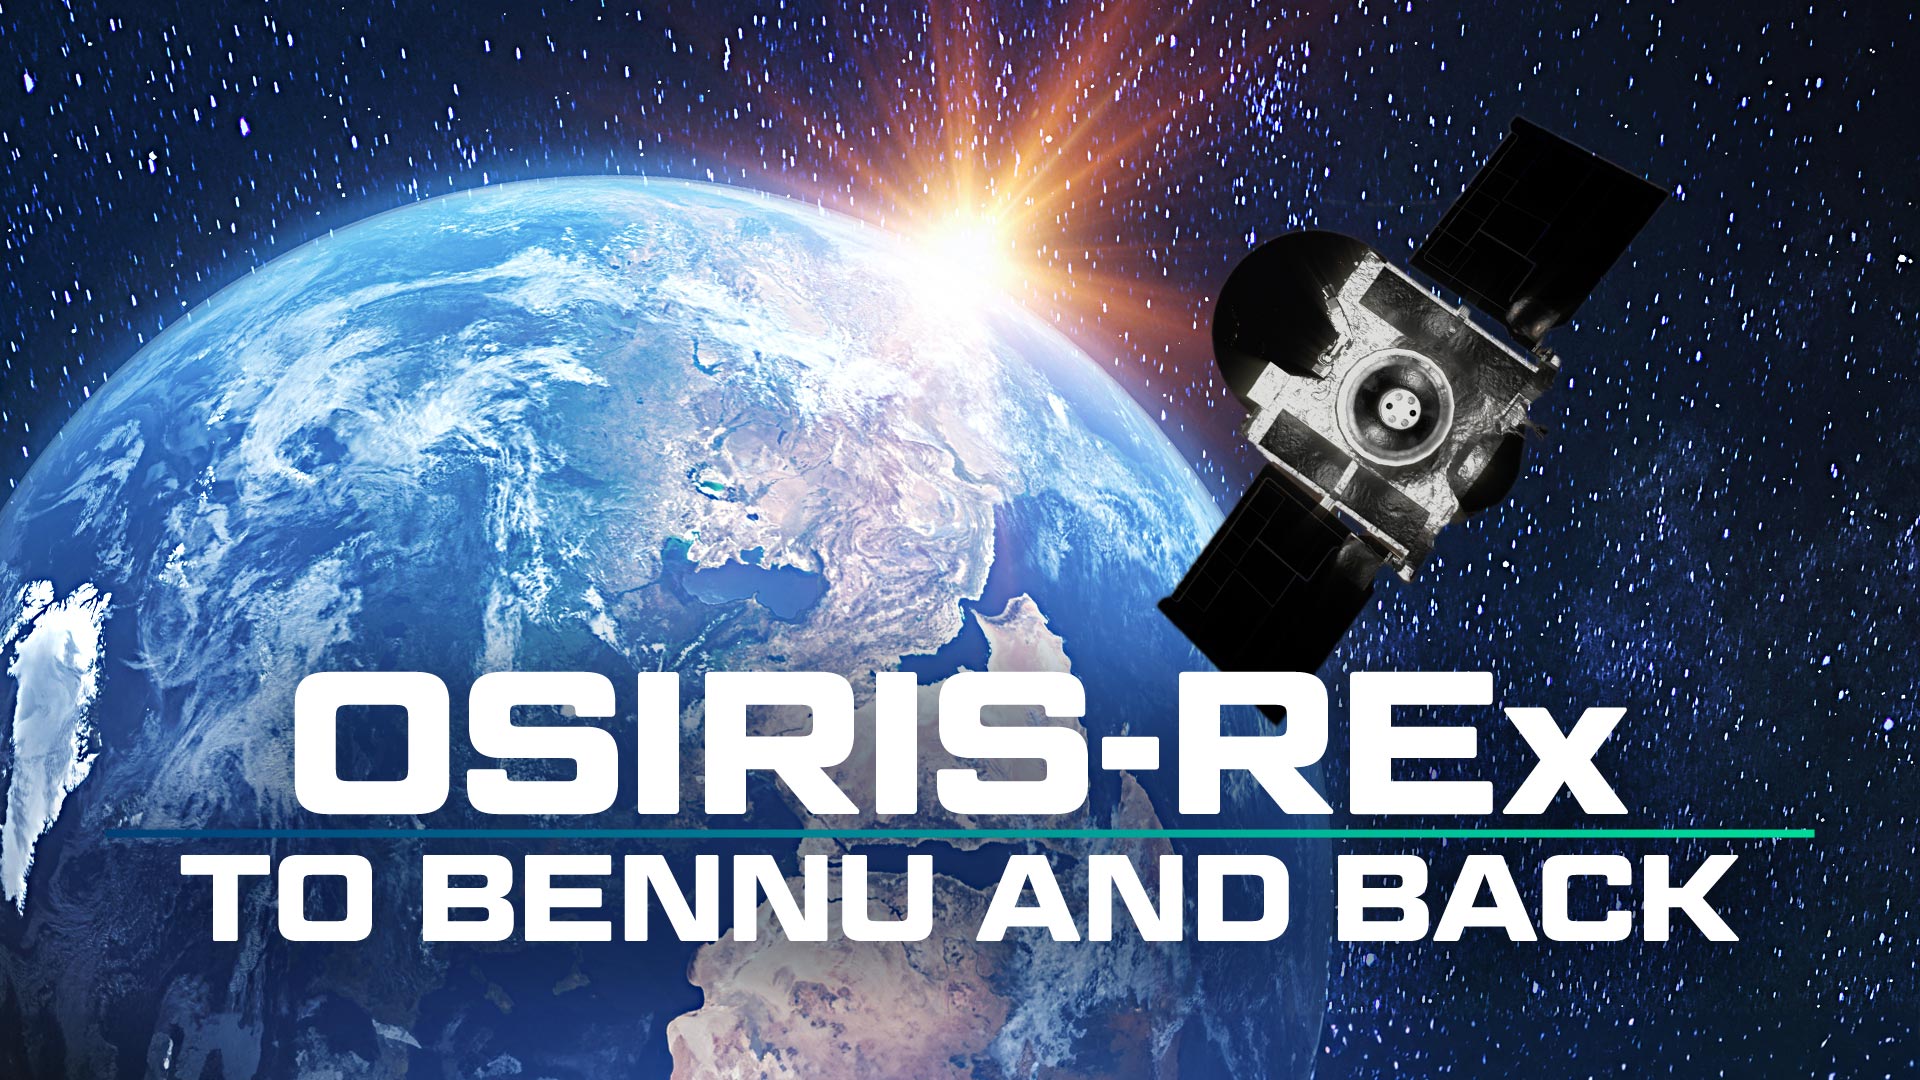 OSIRIS-REx: To Bennu and Back